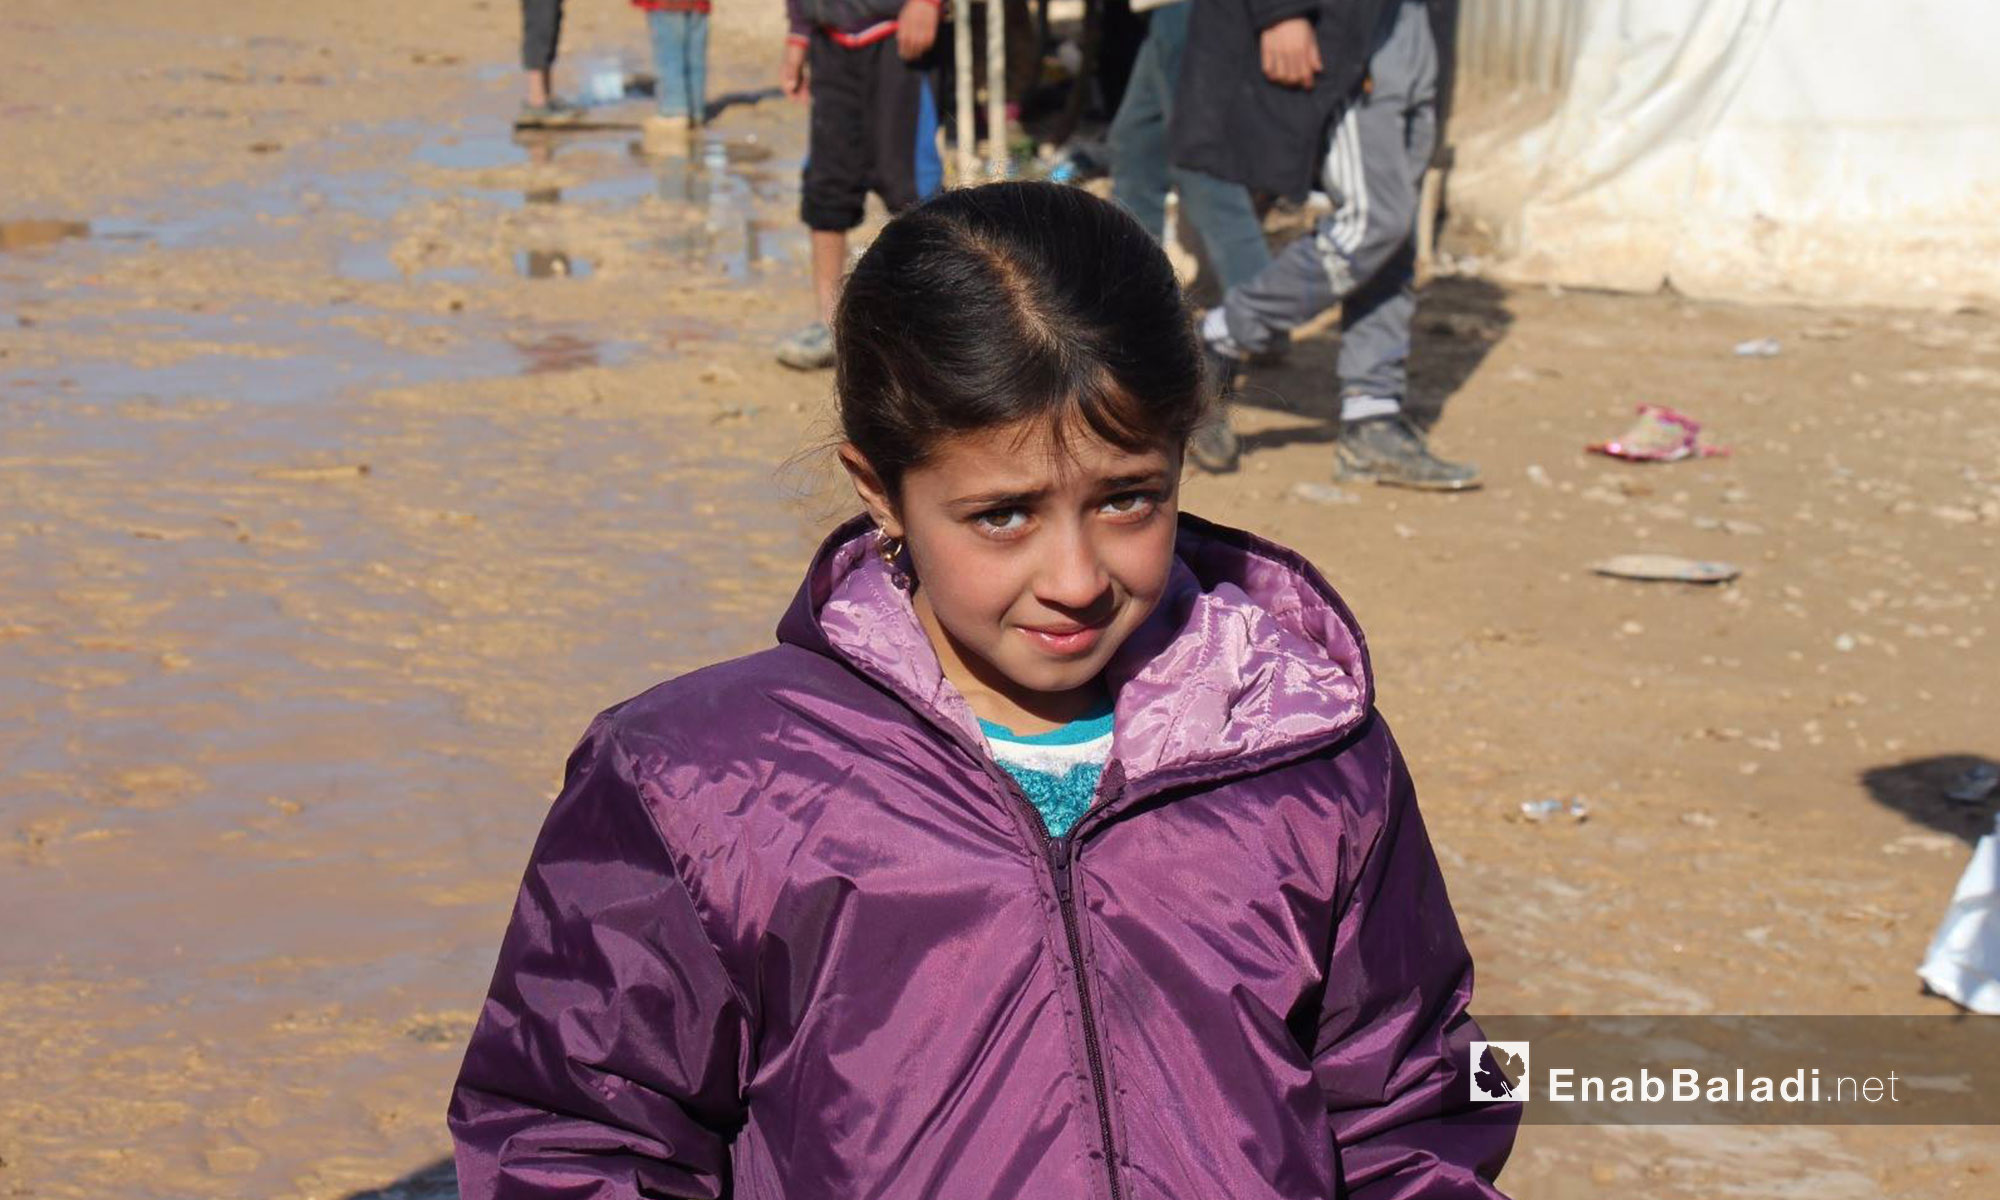 طفلة عراقية لاجئة في مركز استقبال مؤقت في إعزار بريف حلب الشمالي - كانون الأول 2016 (عنب بلدي)